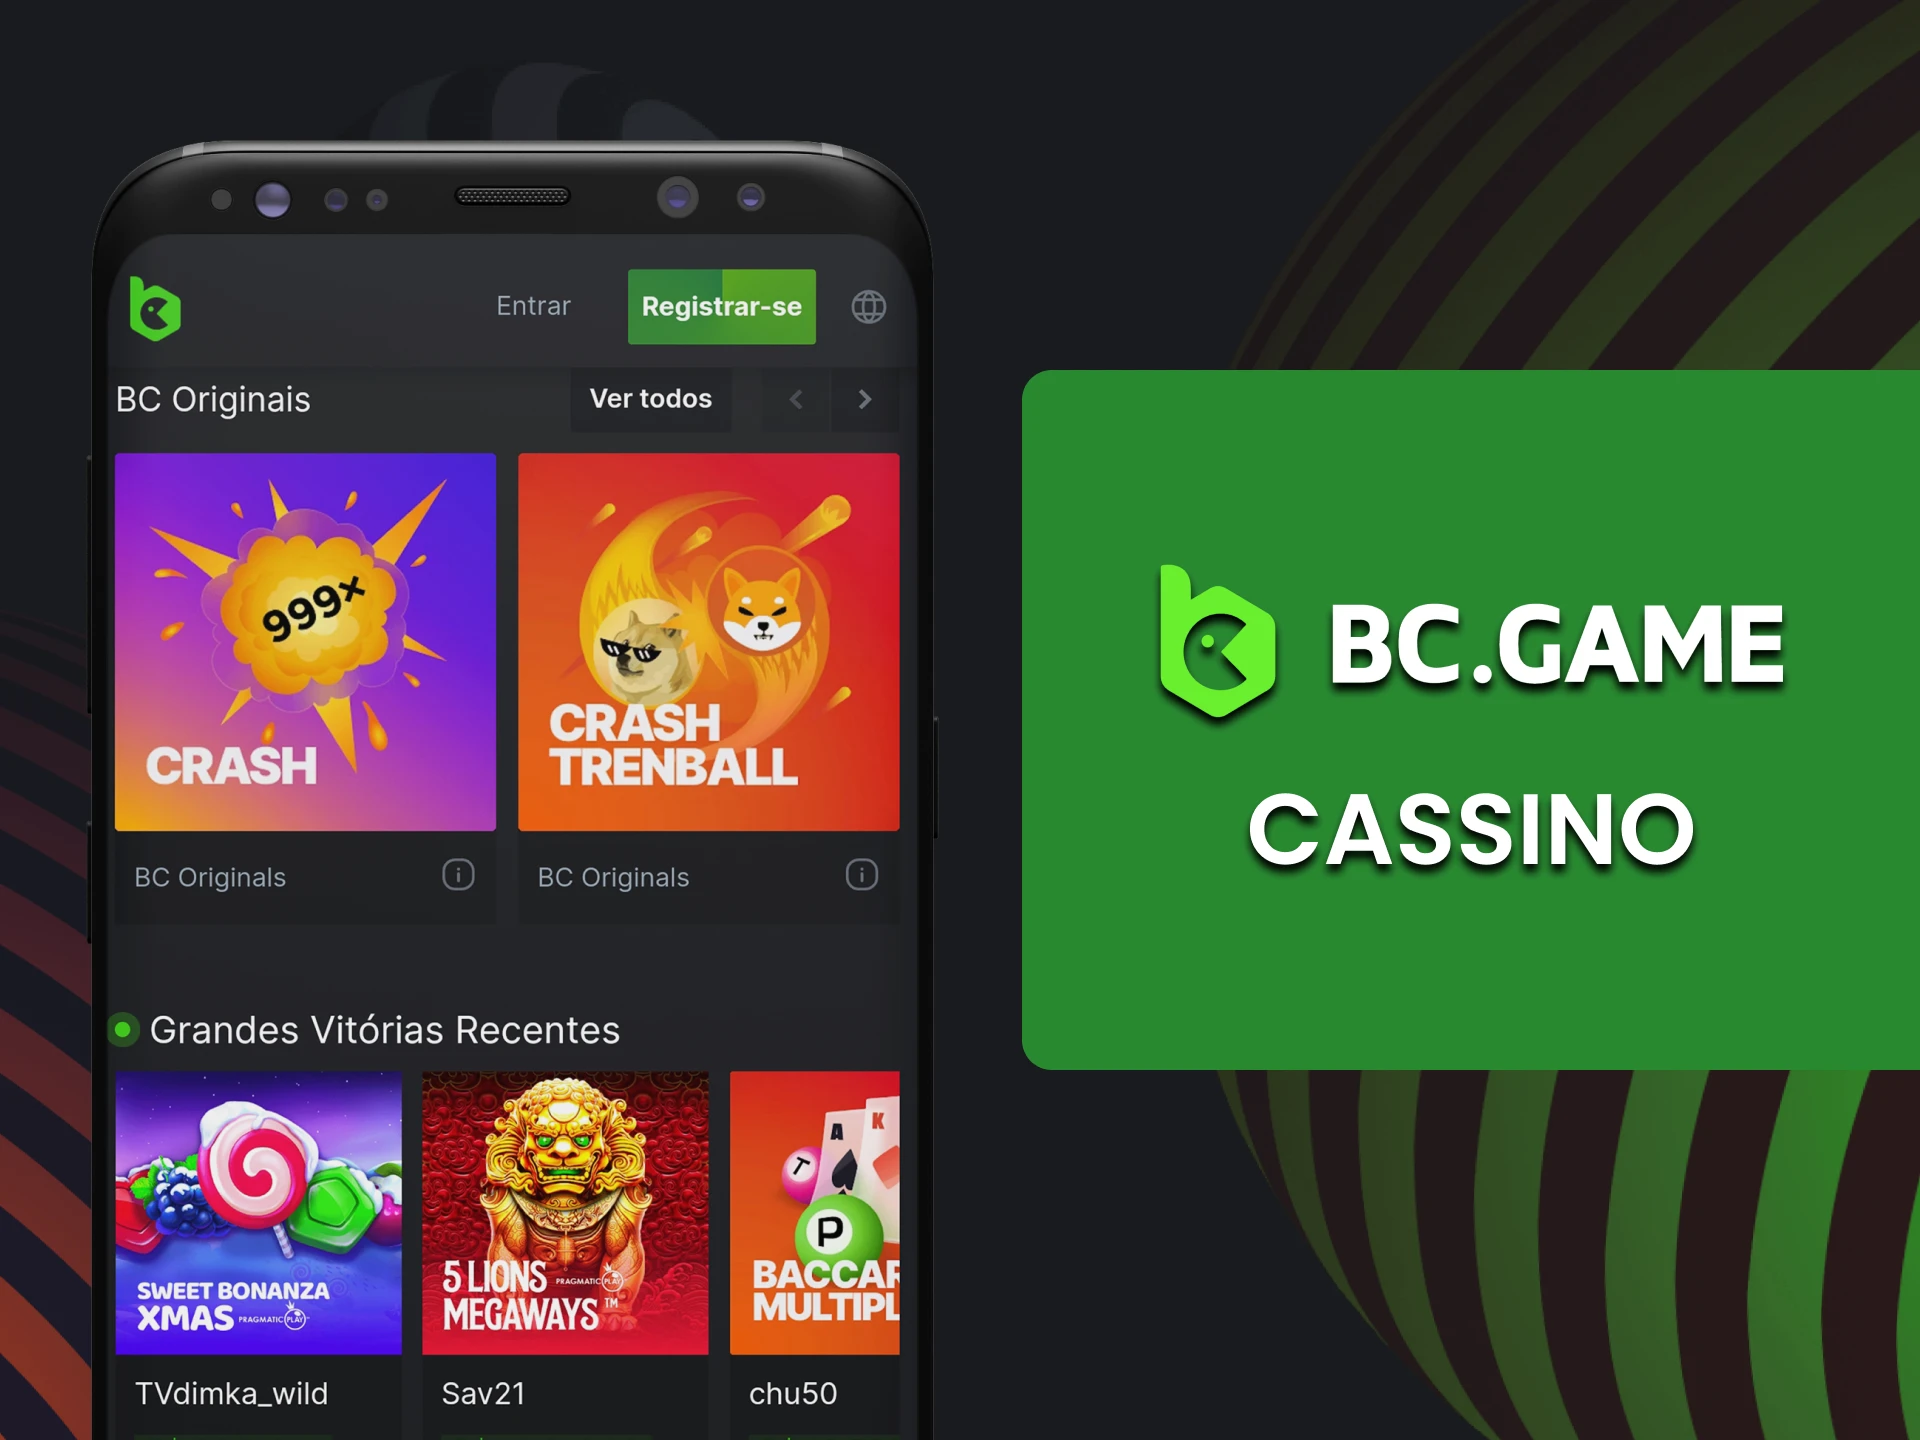 Você pode jogar no cassino usando o aplicativo BC Game.